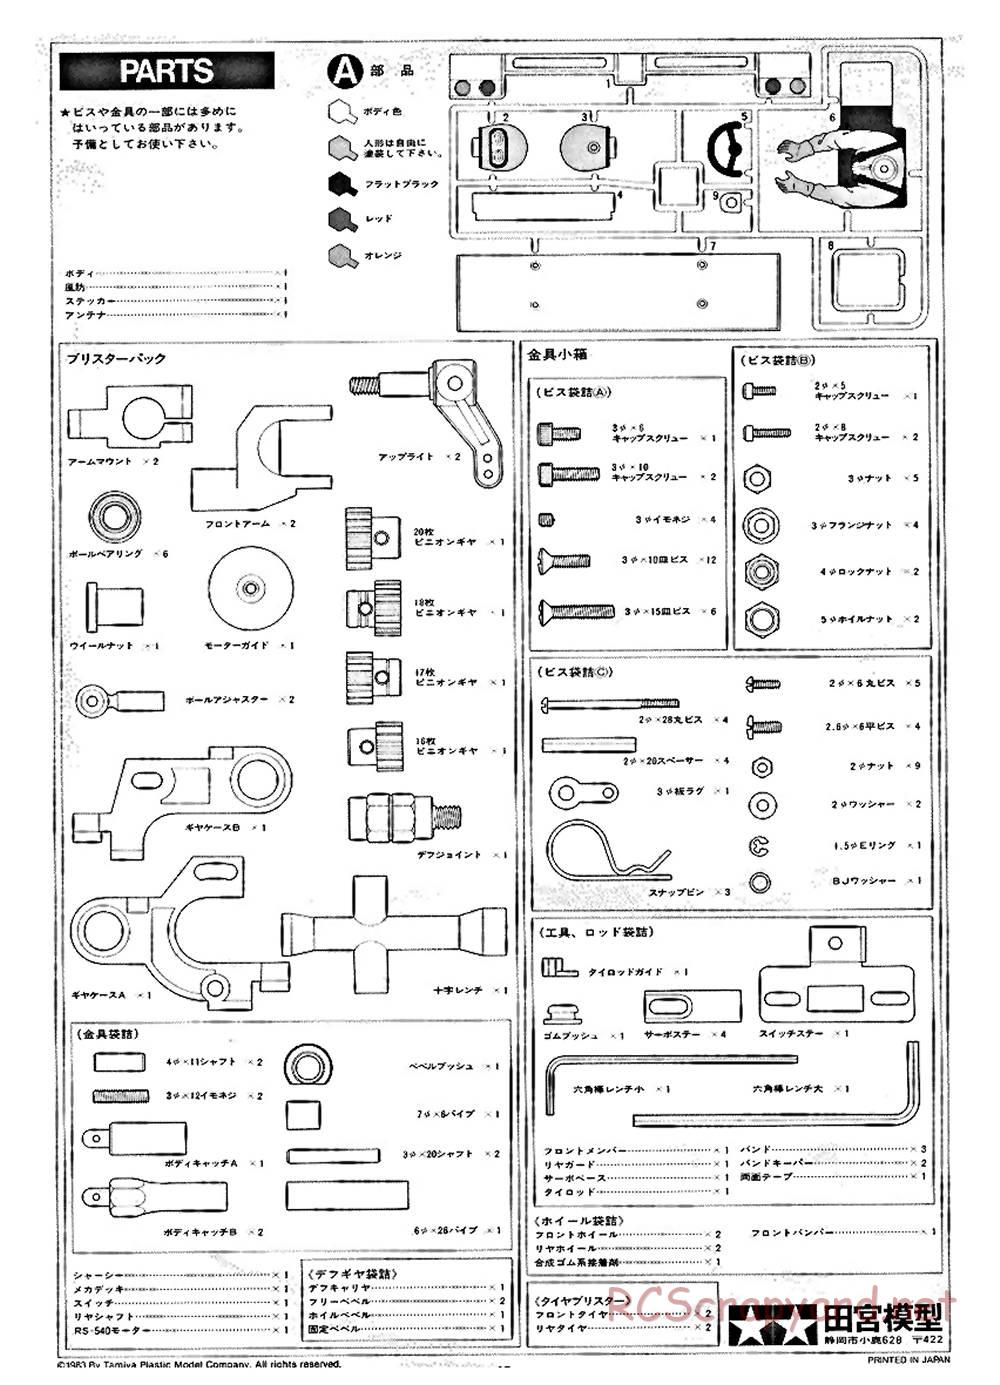 Tamiya - Ford C100 - RM MK.4 - 58033 - Manual - Page 12